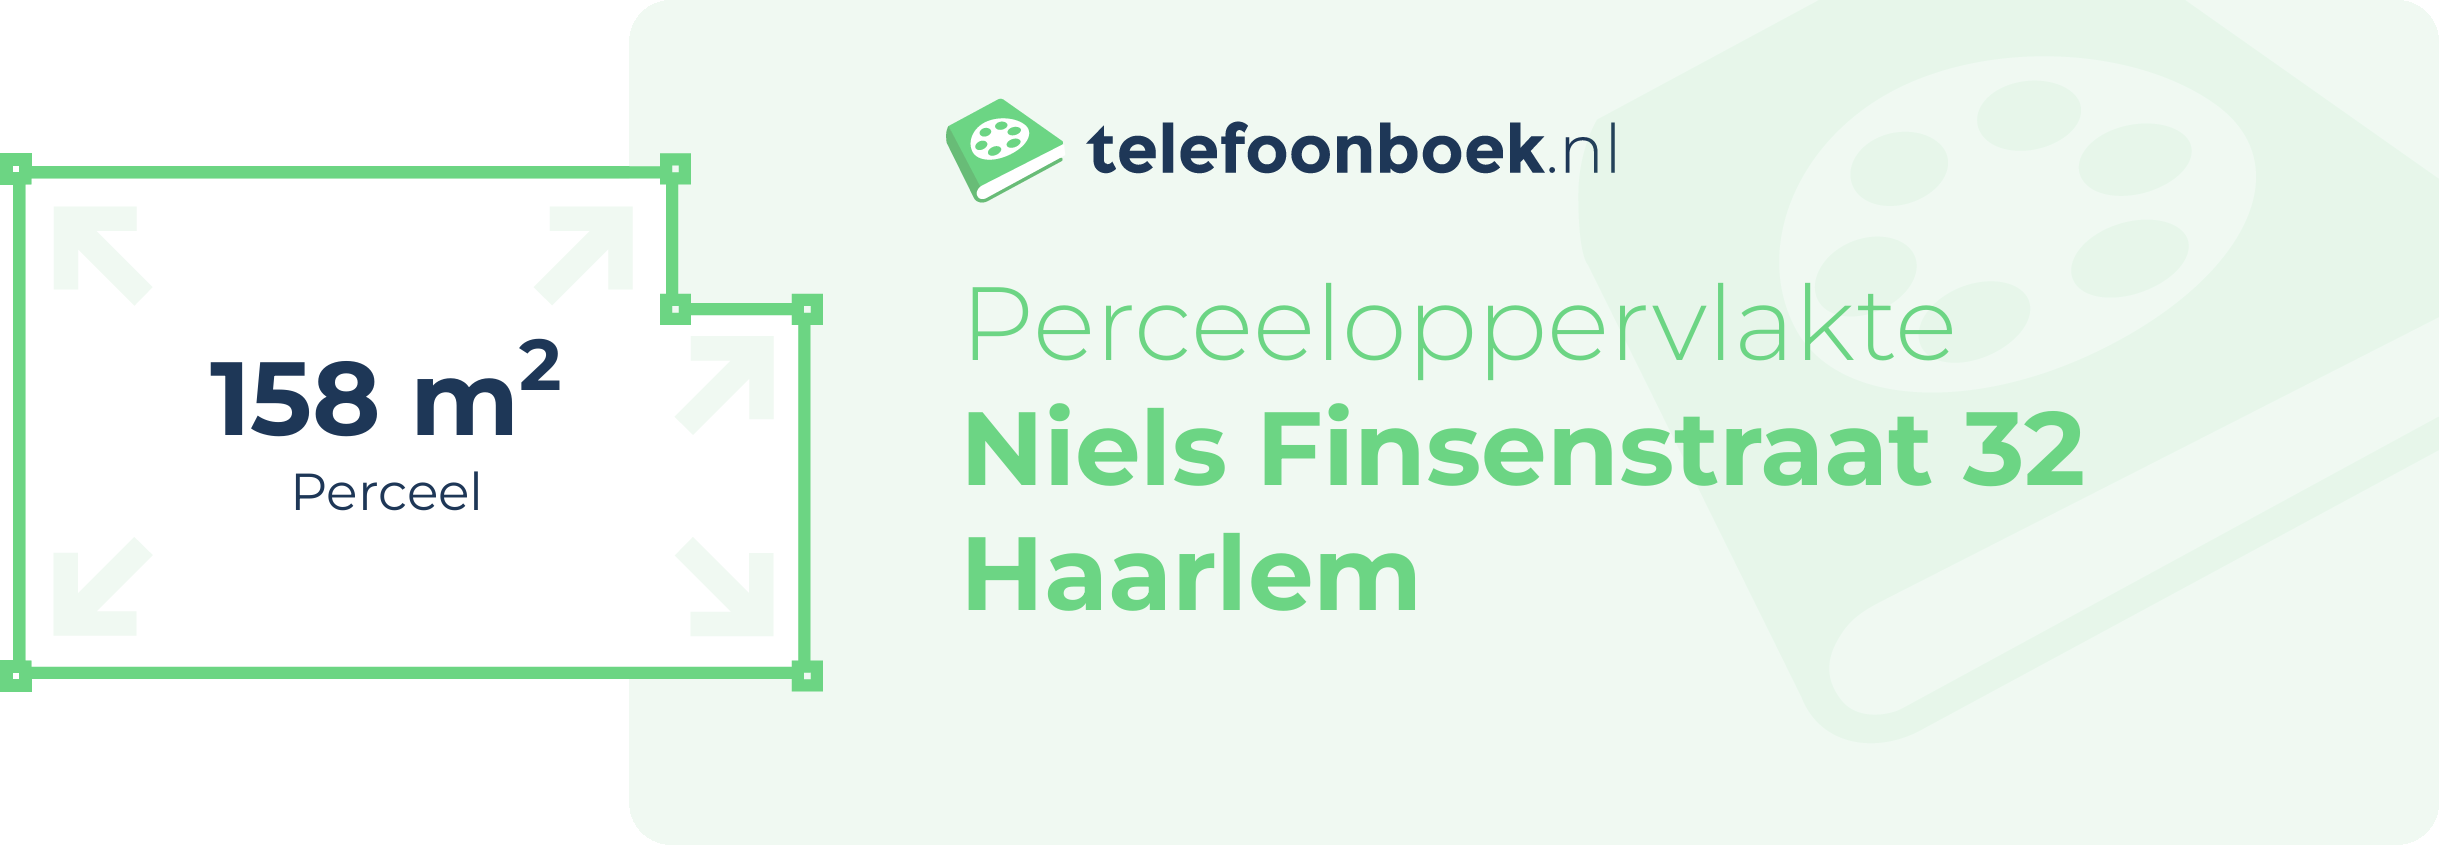 Perceeloppervlakte Niels Finsenstraat 32 Haarlem